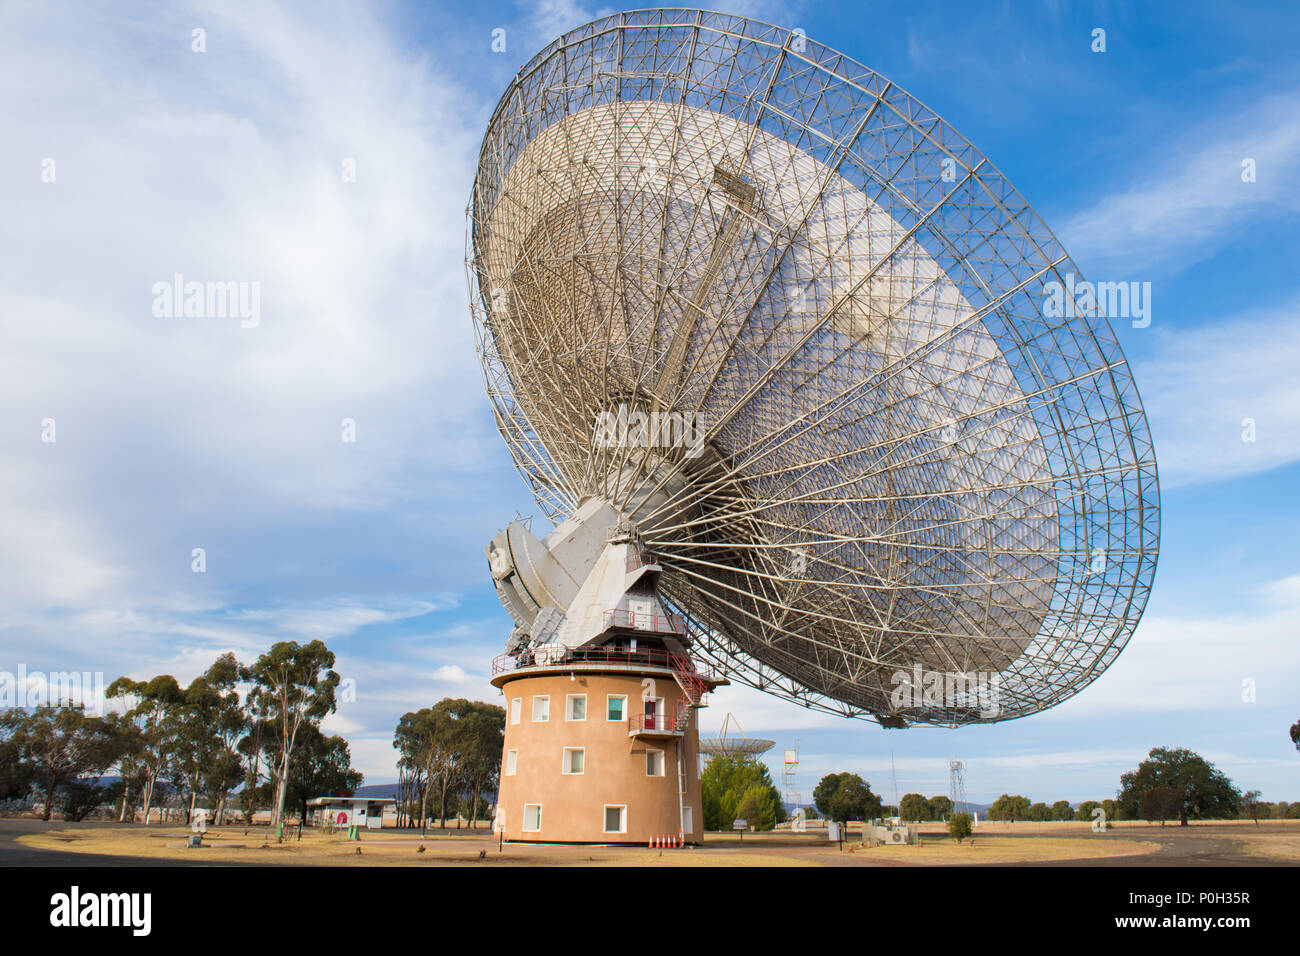 Parkes radio telescope è un 64-m diametro disco parabolico usato per la radio astronomia. Questo telescopio portato immagini in diretta alla televisione quando l uomo 1 sbarcati sulla luna in Apollo 11 su 21 Luglio 1969 - Parkes, Nuovo Galles del Sud, Australia Foto Stock